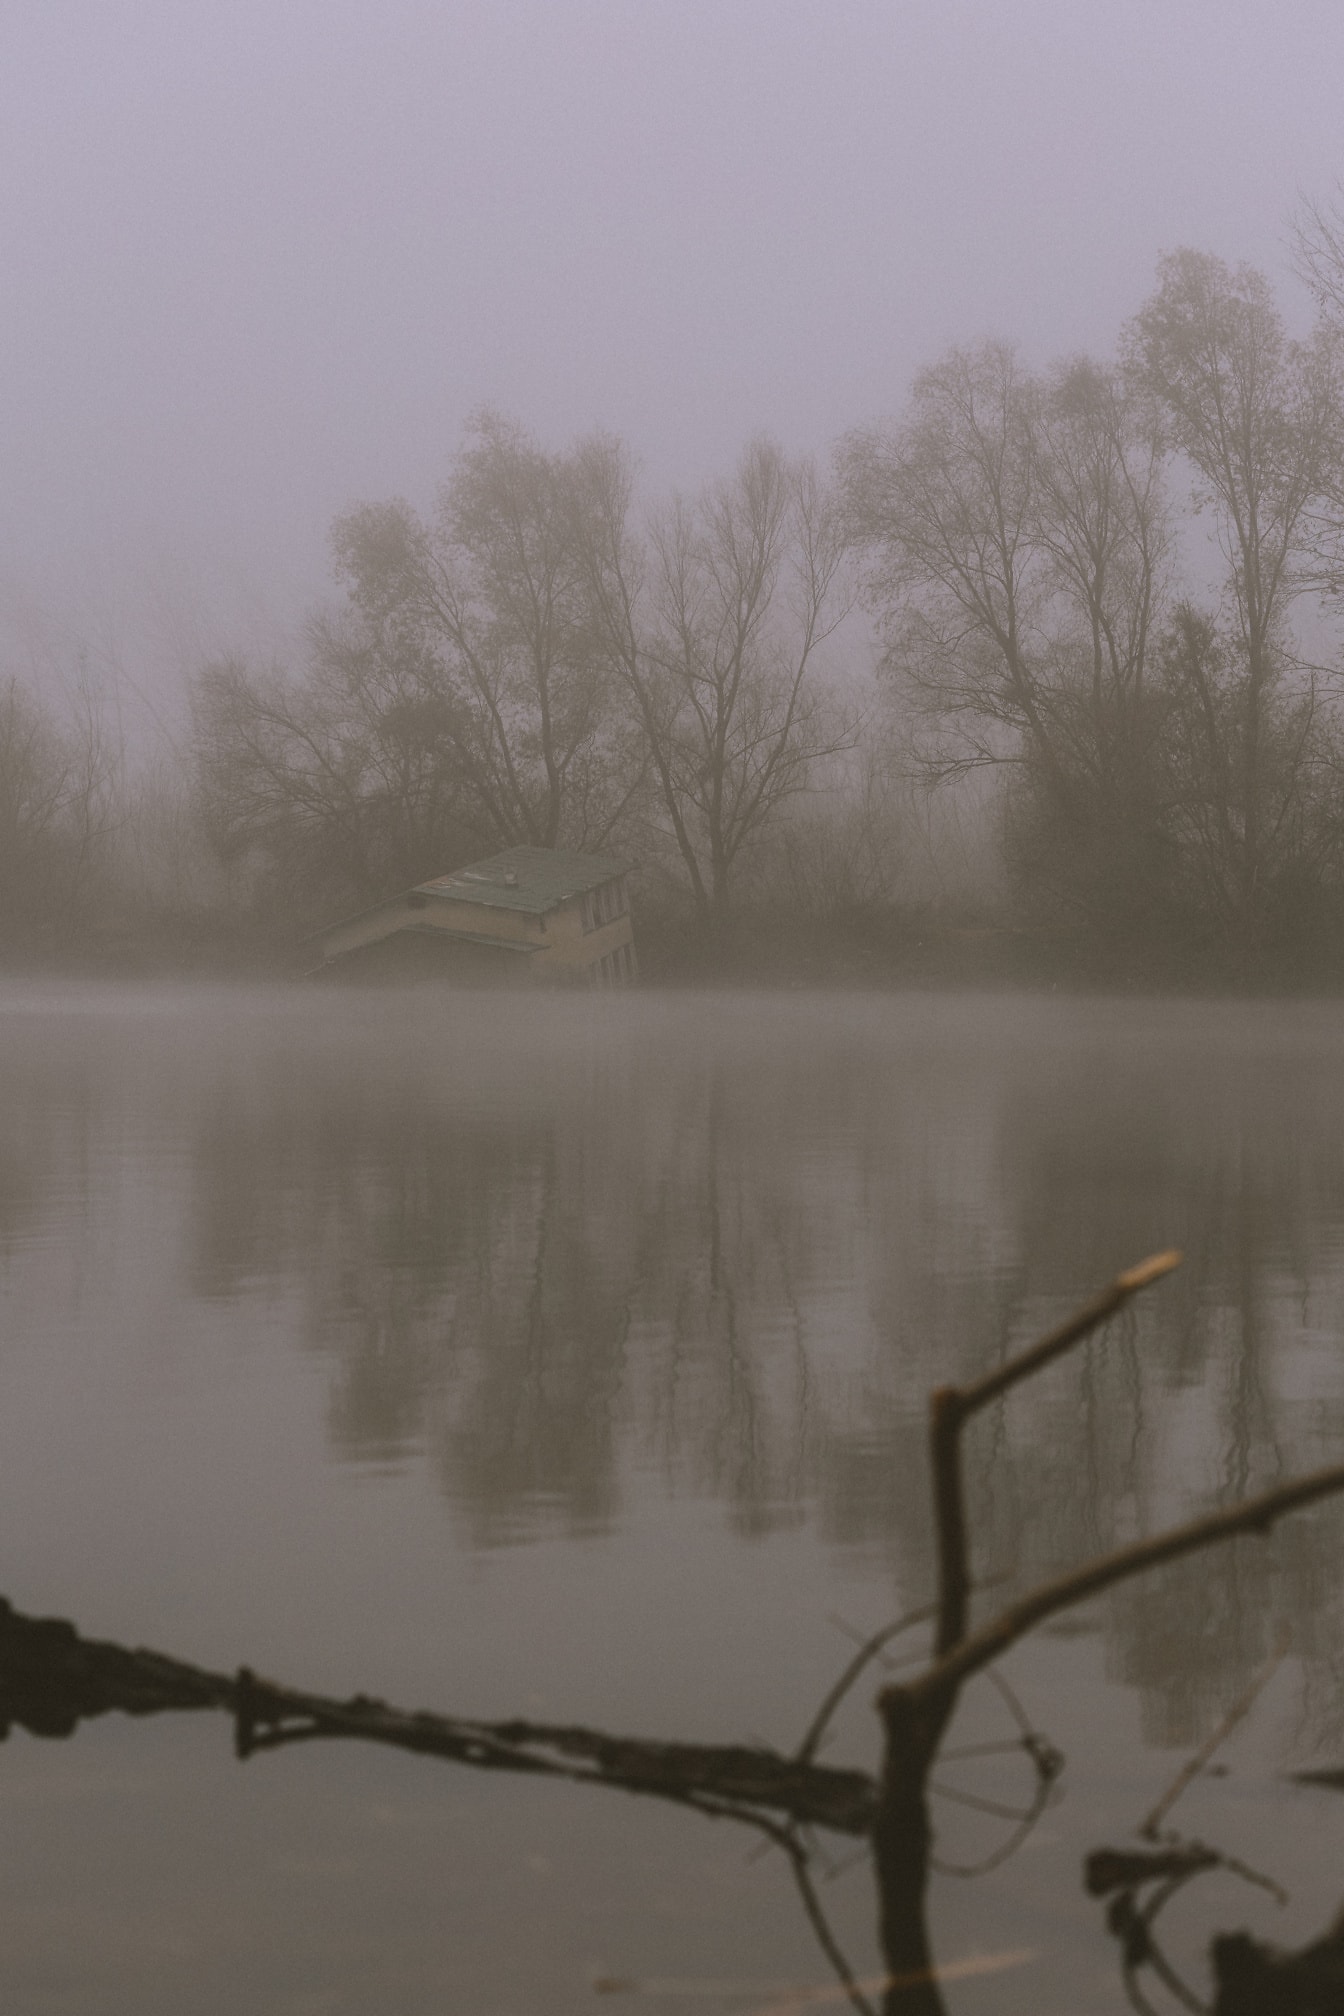 Rimessa per barche mezzo allagata nell’acqua su una riva del lago a nebbia densa